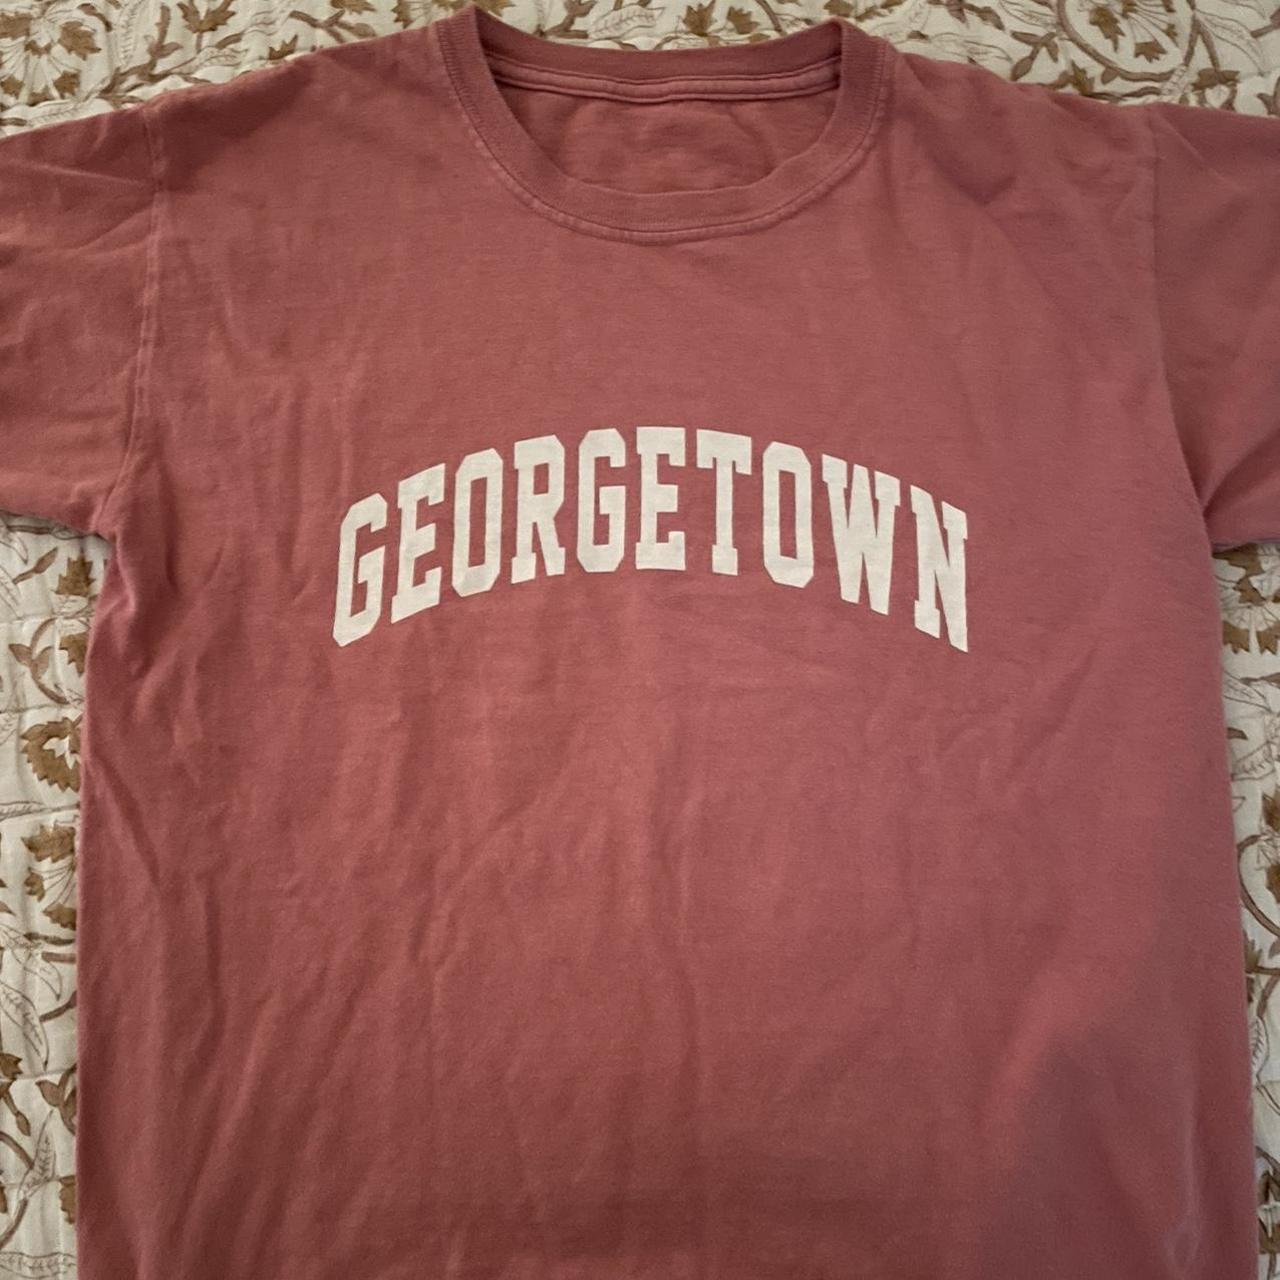 Brandy Melville Georgetown shirt! - Depop